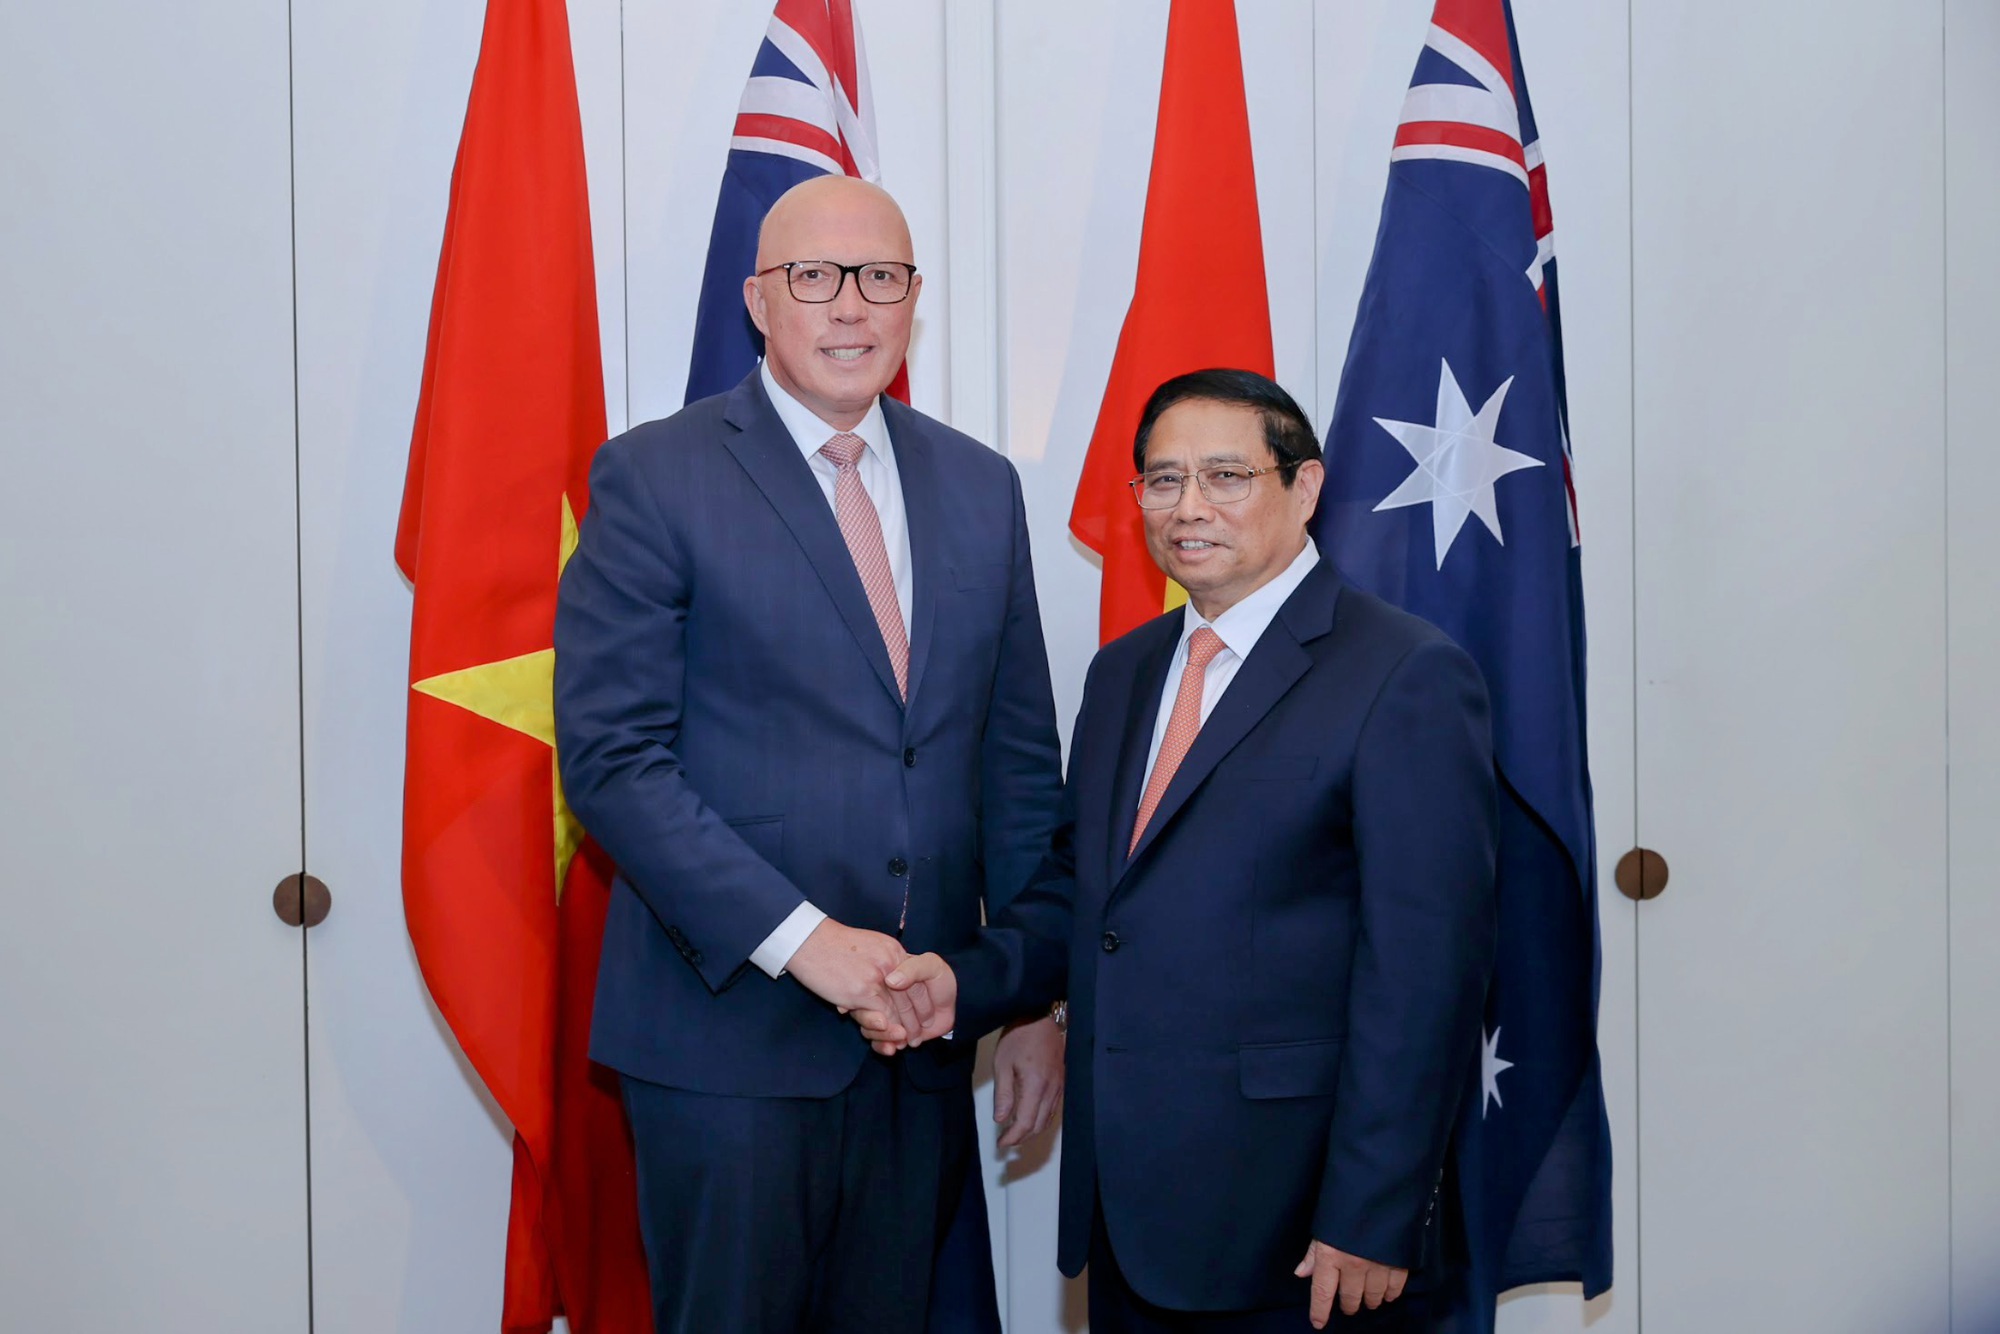 Thủ tướng Chính phủ Phạm Minh Chính bày tỏ mong muốn Đảng Tự do Australia tiếp tục ủng hộ các chính sách tạo điều kiện thuận lợi cho cộng đồng người Việt Nam sinh sống, làm việc và học tập tại Australia, đóng góp cho sự phát triển của Australia và quan hệ hai nước - Ảnh: VGP/Nhật Bắc